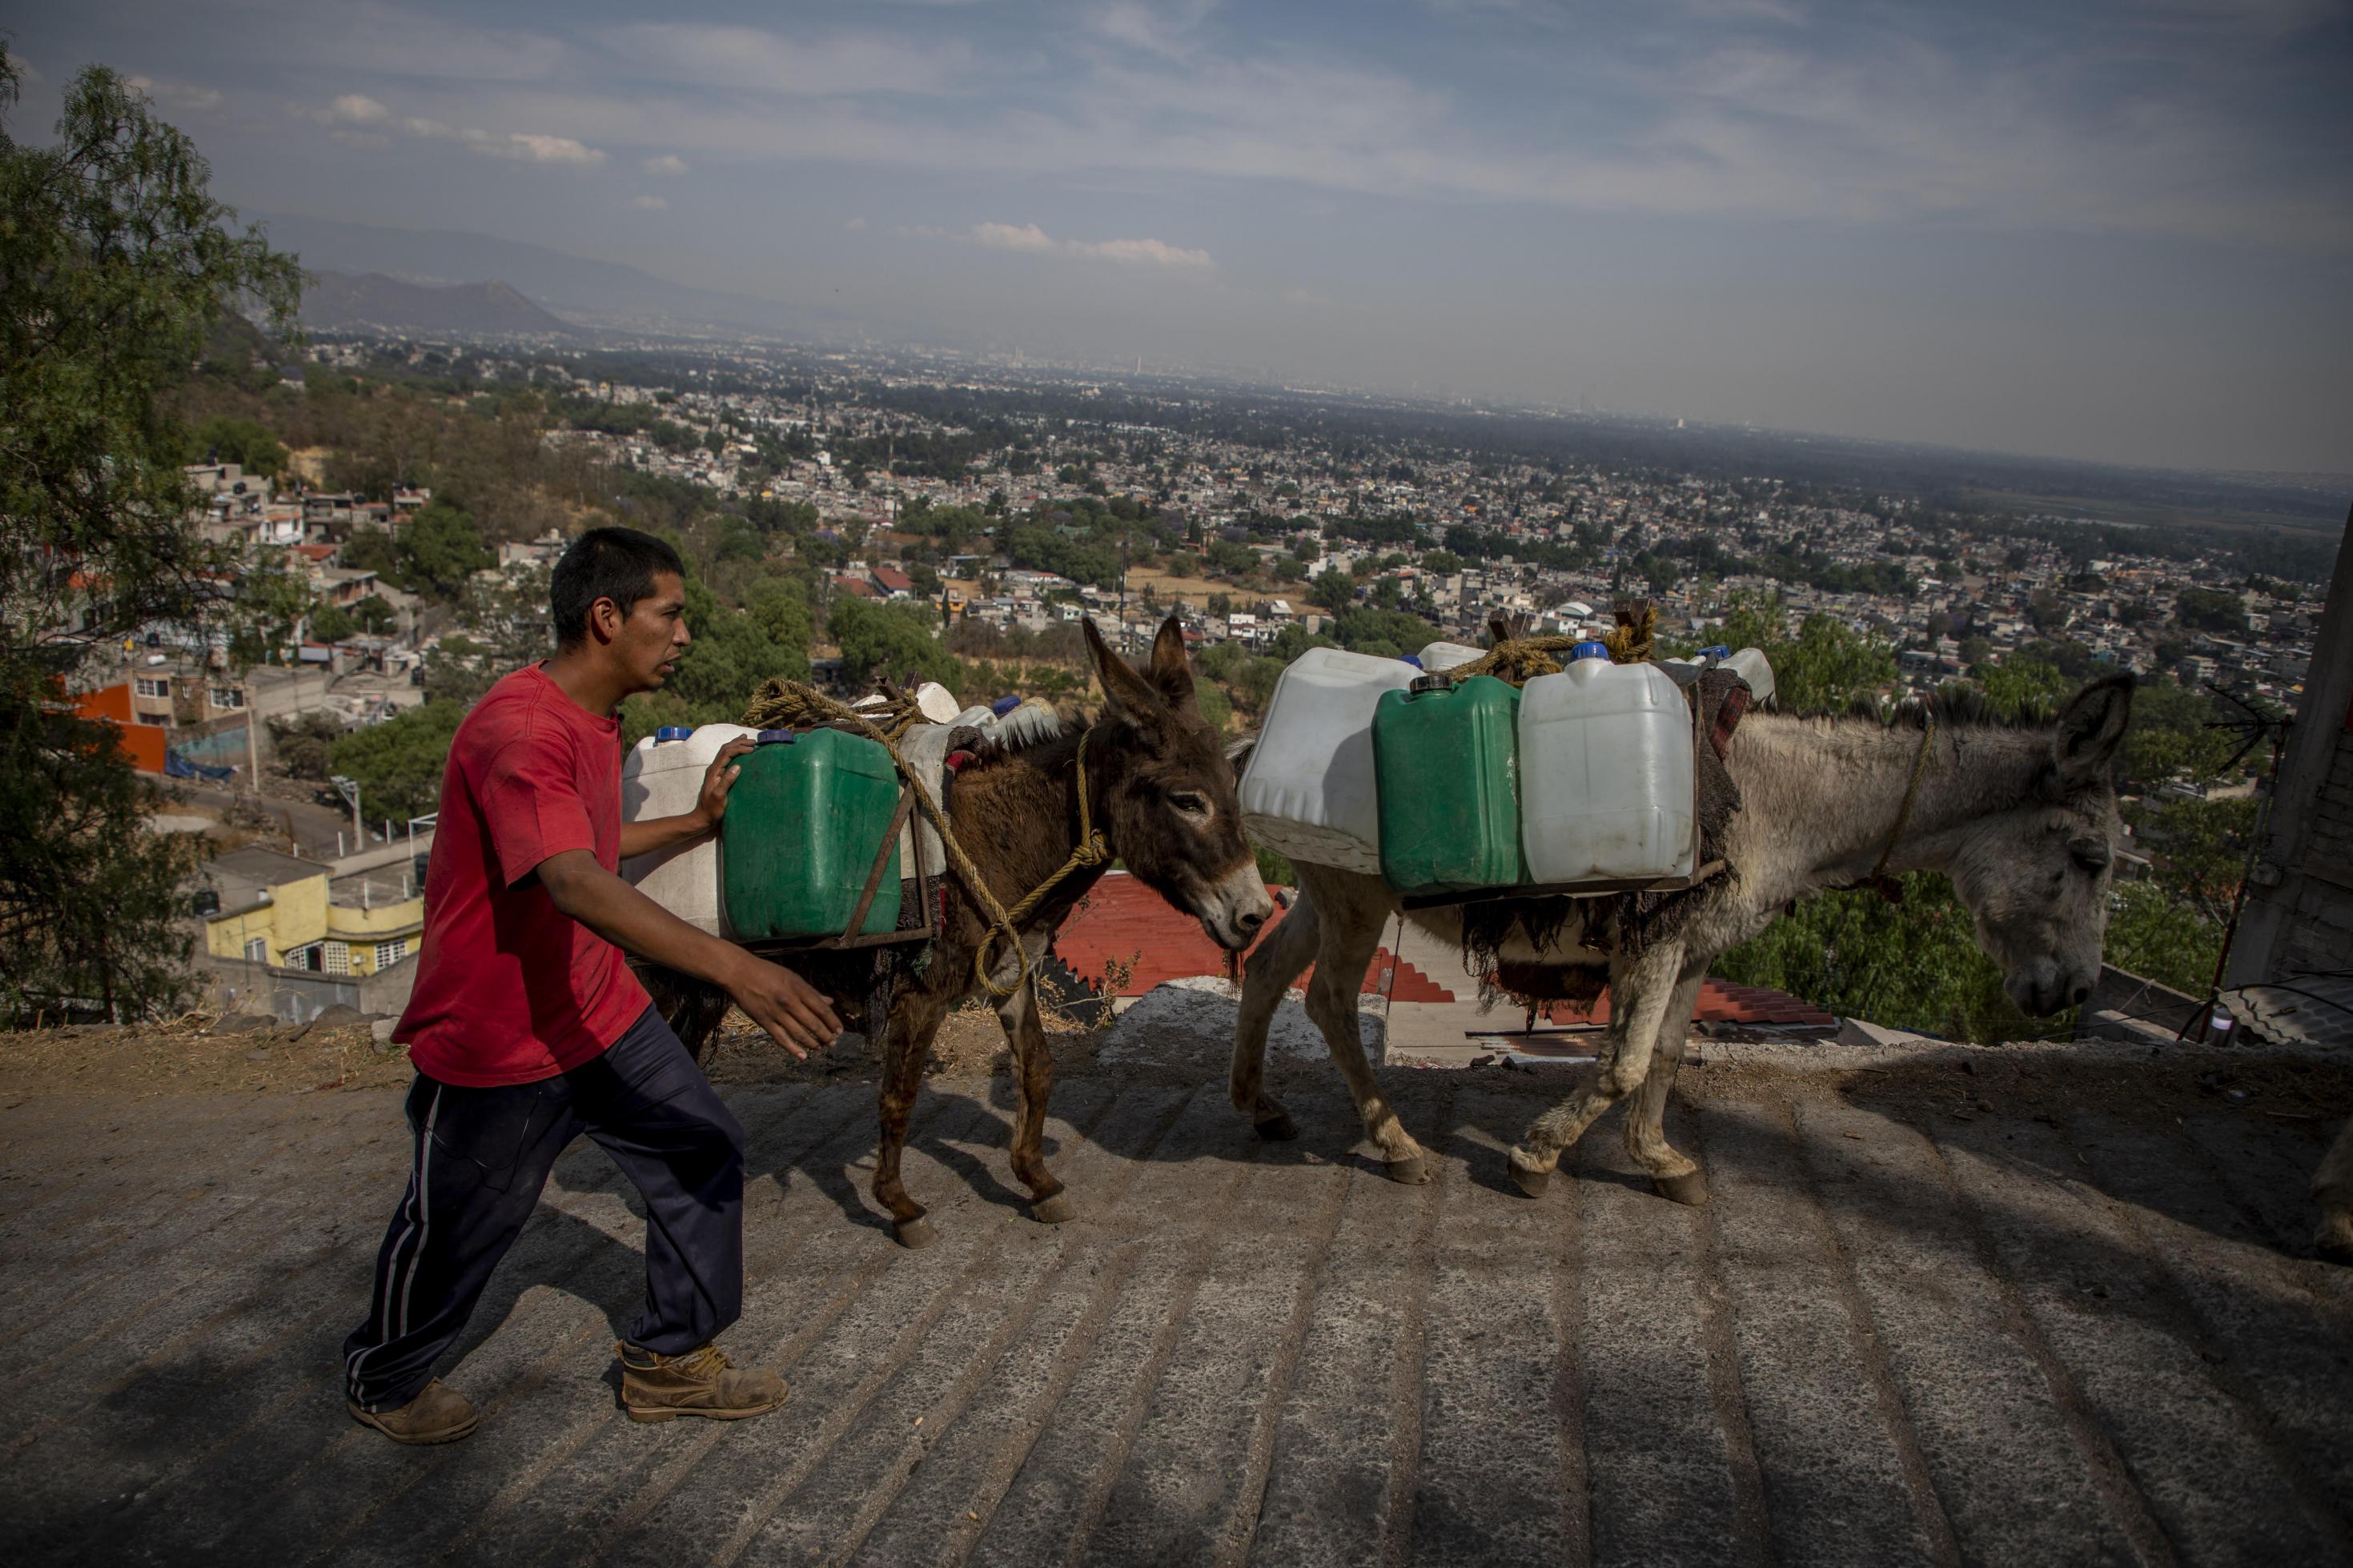 Felix Villeda Rivera geht neben Eseln, die Wasserkanister tragen. Seit Wochen igibt es in seinem Stadtteil kaum noch Wasser. Santa Cruz Acalpixca en Xochimilco, südlich der Hauptstadt, unterbrochen wurde. Der Mangel an Trinkwasser hat Einwohner des Dorfes dazu bewegt, die Versorgung mit Kanistern auf Eseln zu decken.